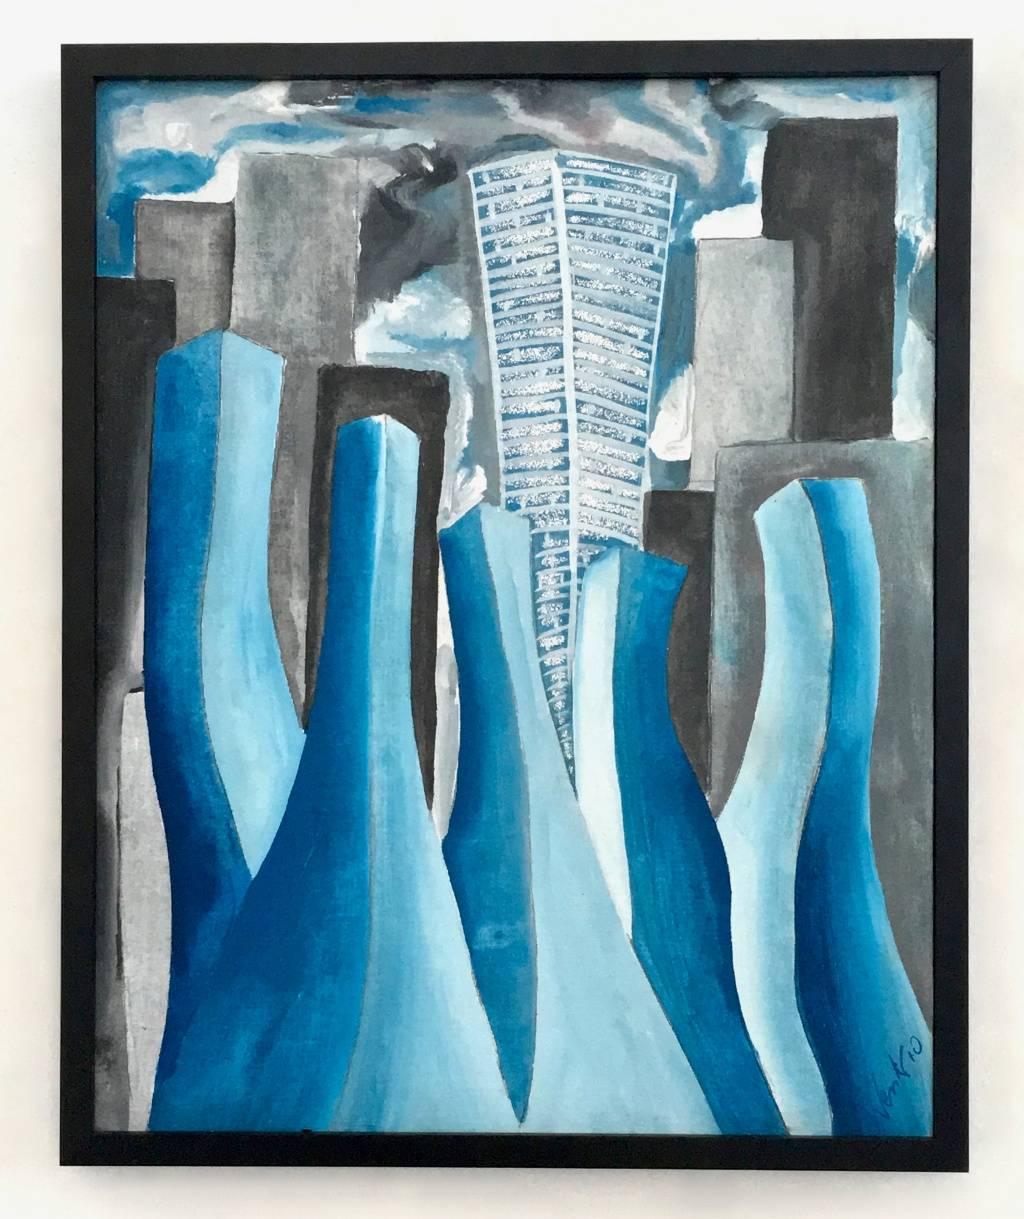 Mattino a San Paolo von E. Wenk, 2010  Blaue Stadtlandschaft, Acryl auf Leinwand (Abstrakter Expressionismus), Painting, von Enzio Wenk